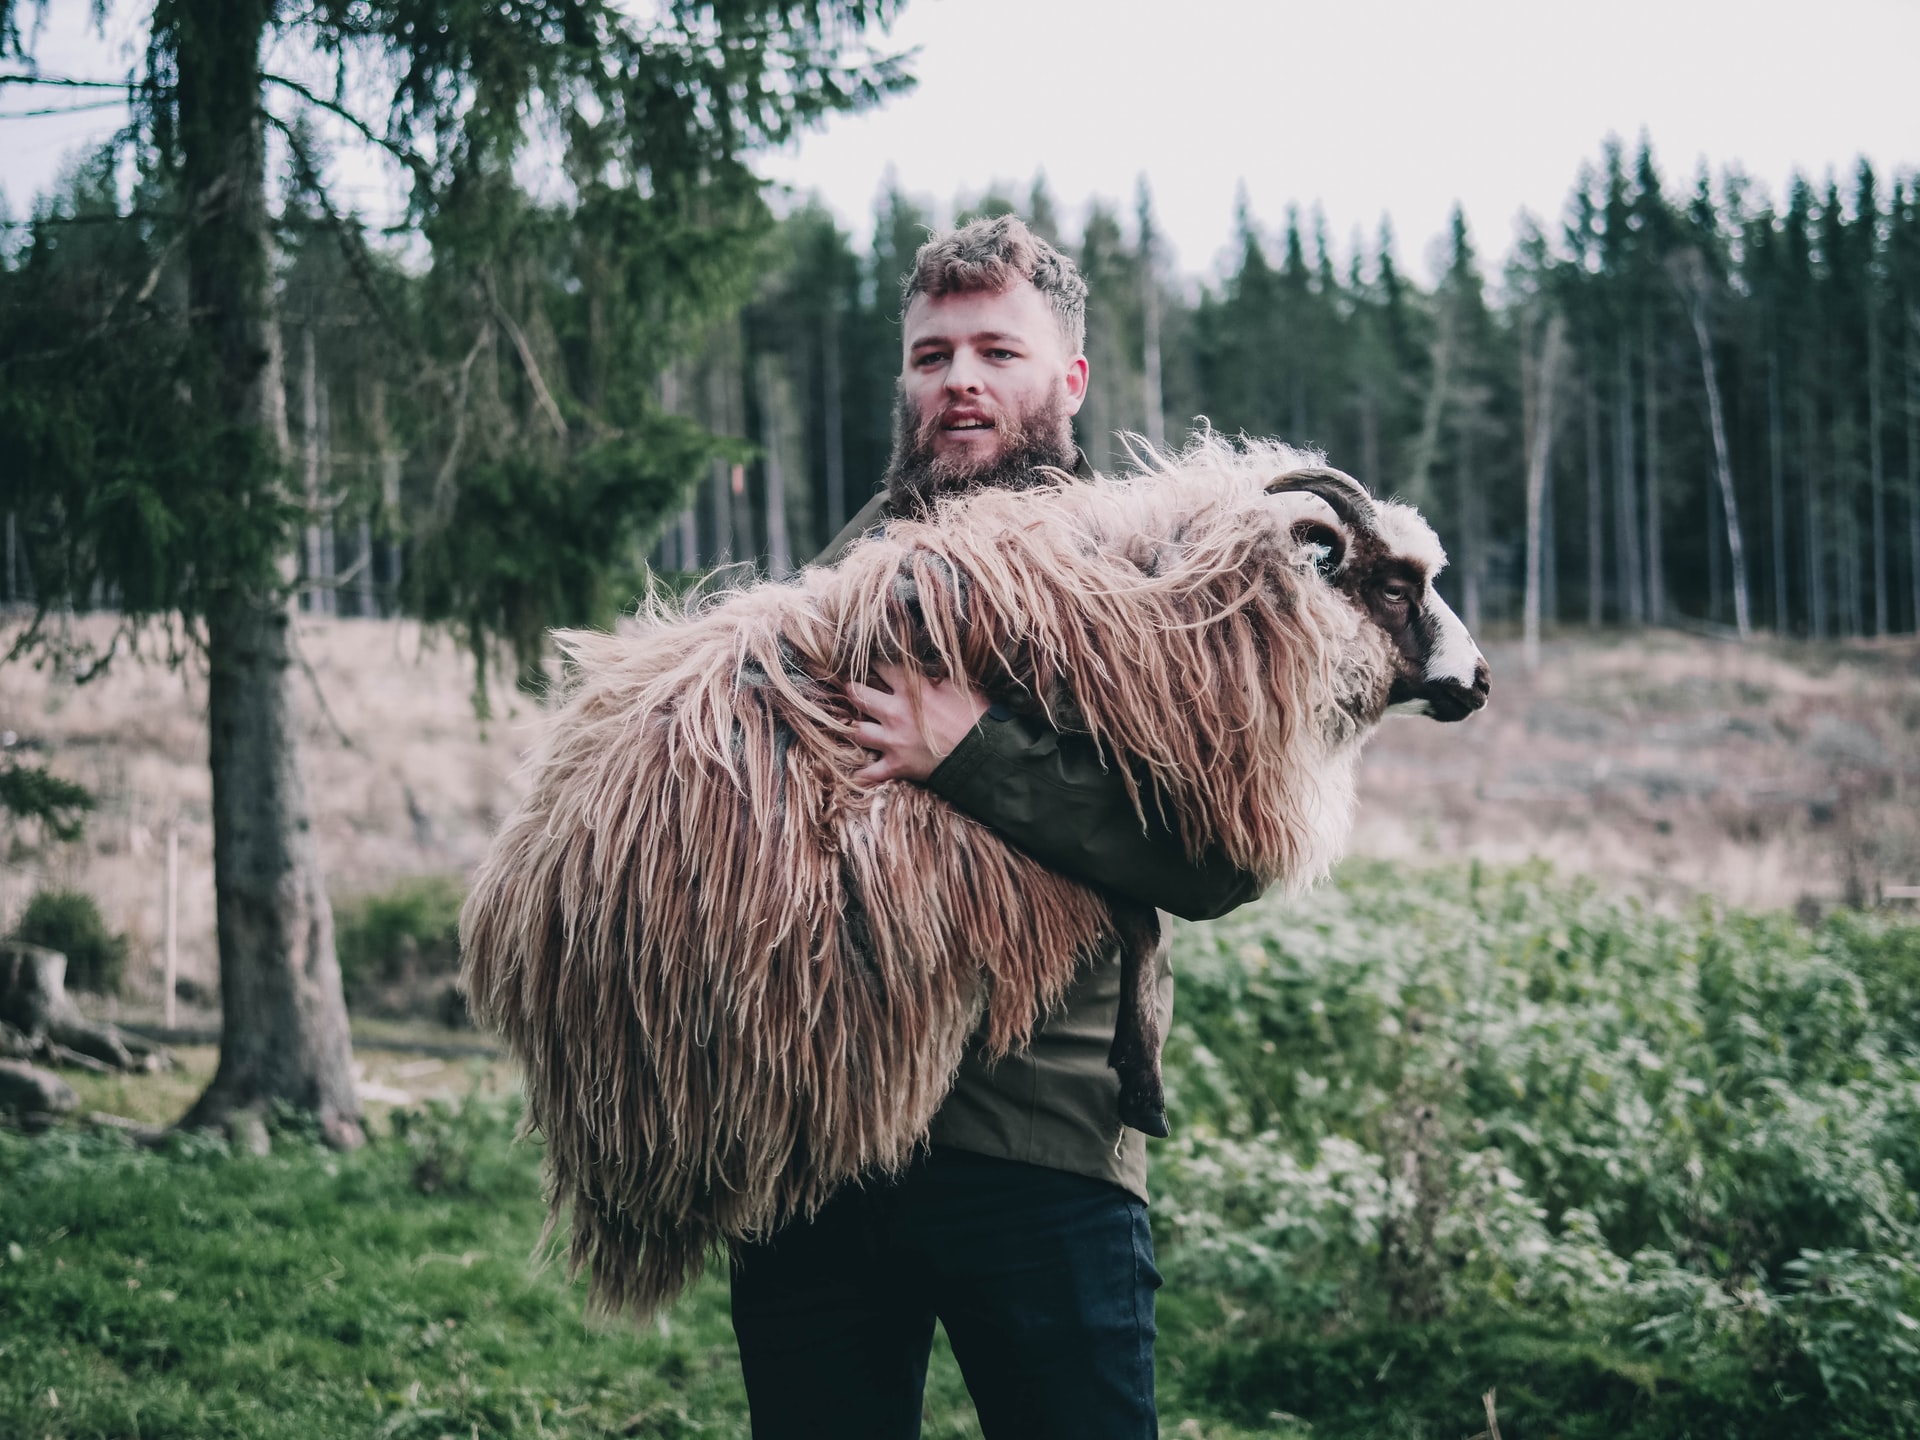 Pastor de ovelhas segurando um carneiro em seus braços, em pasto.